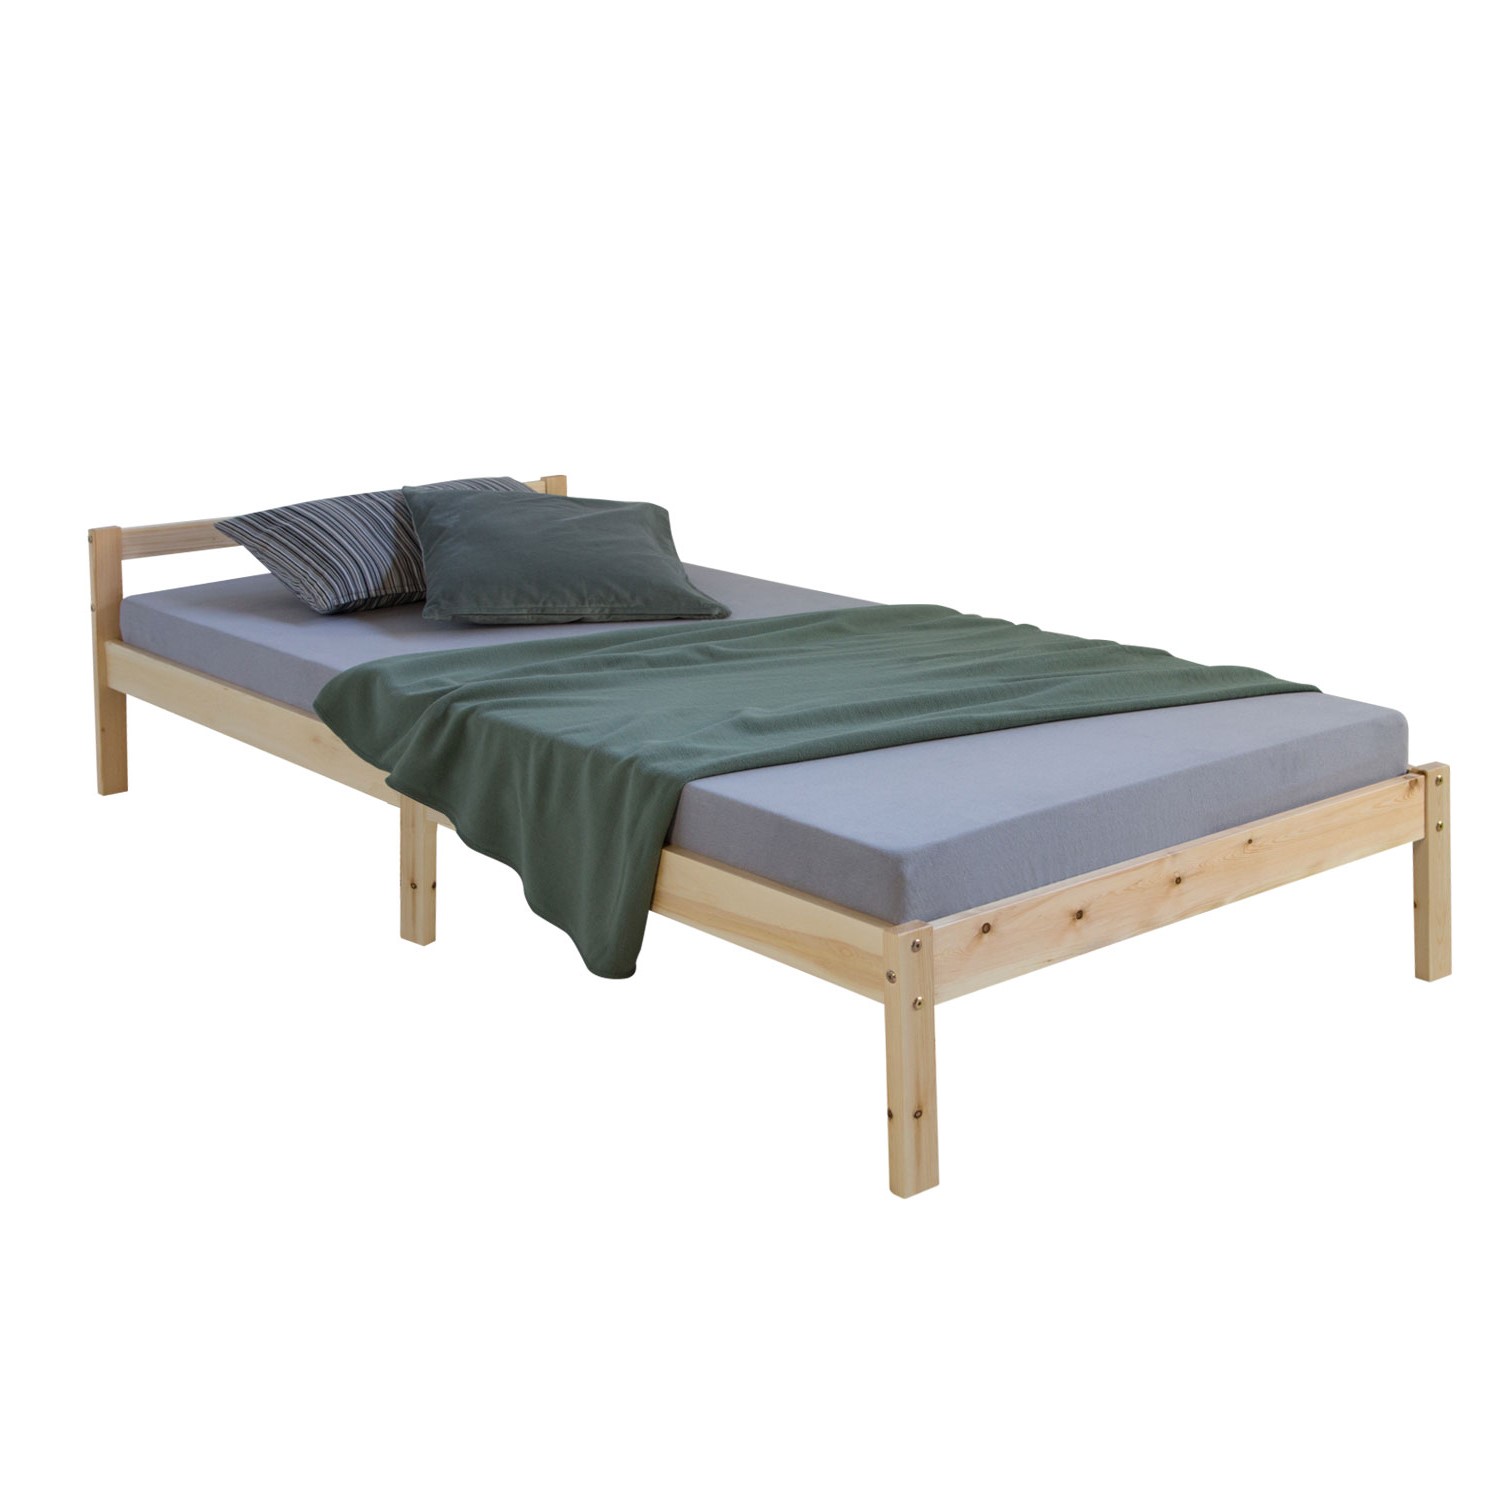 Jeunesse de lit simple bois massif lit nature 200 x 90 sommier à lattes futon